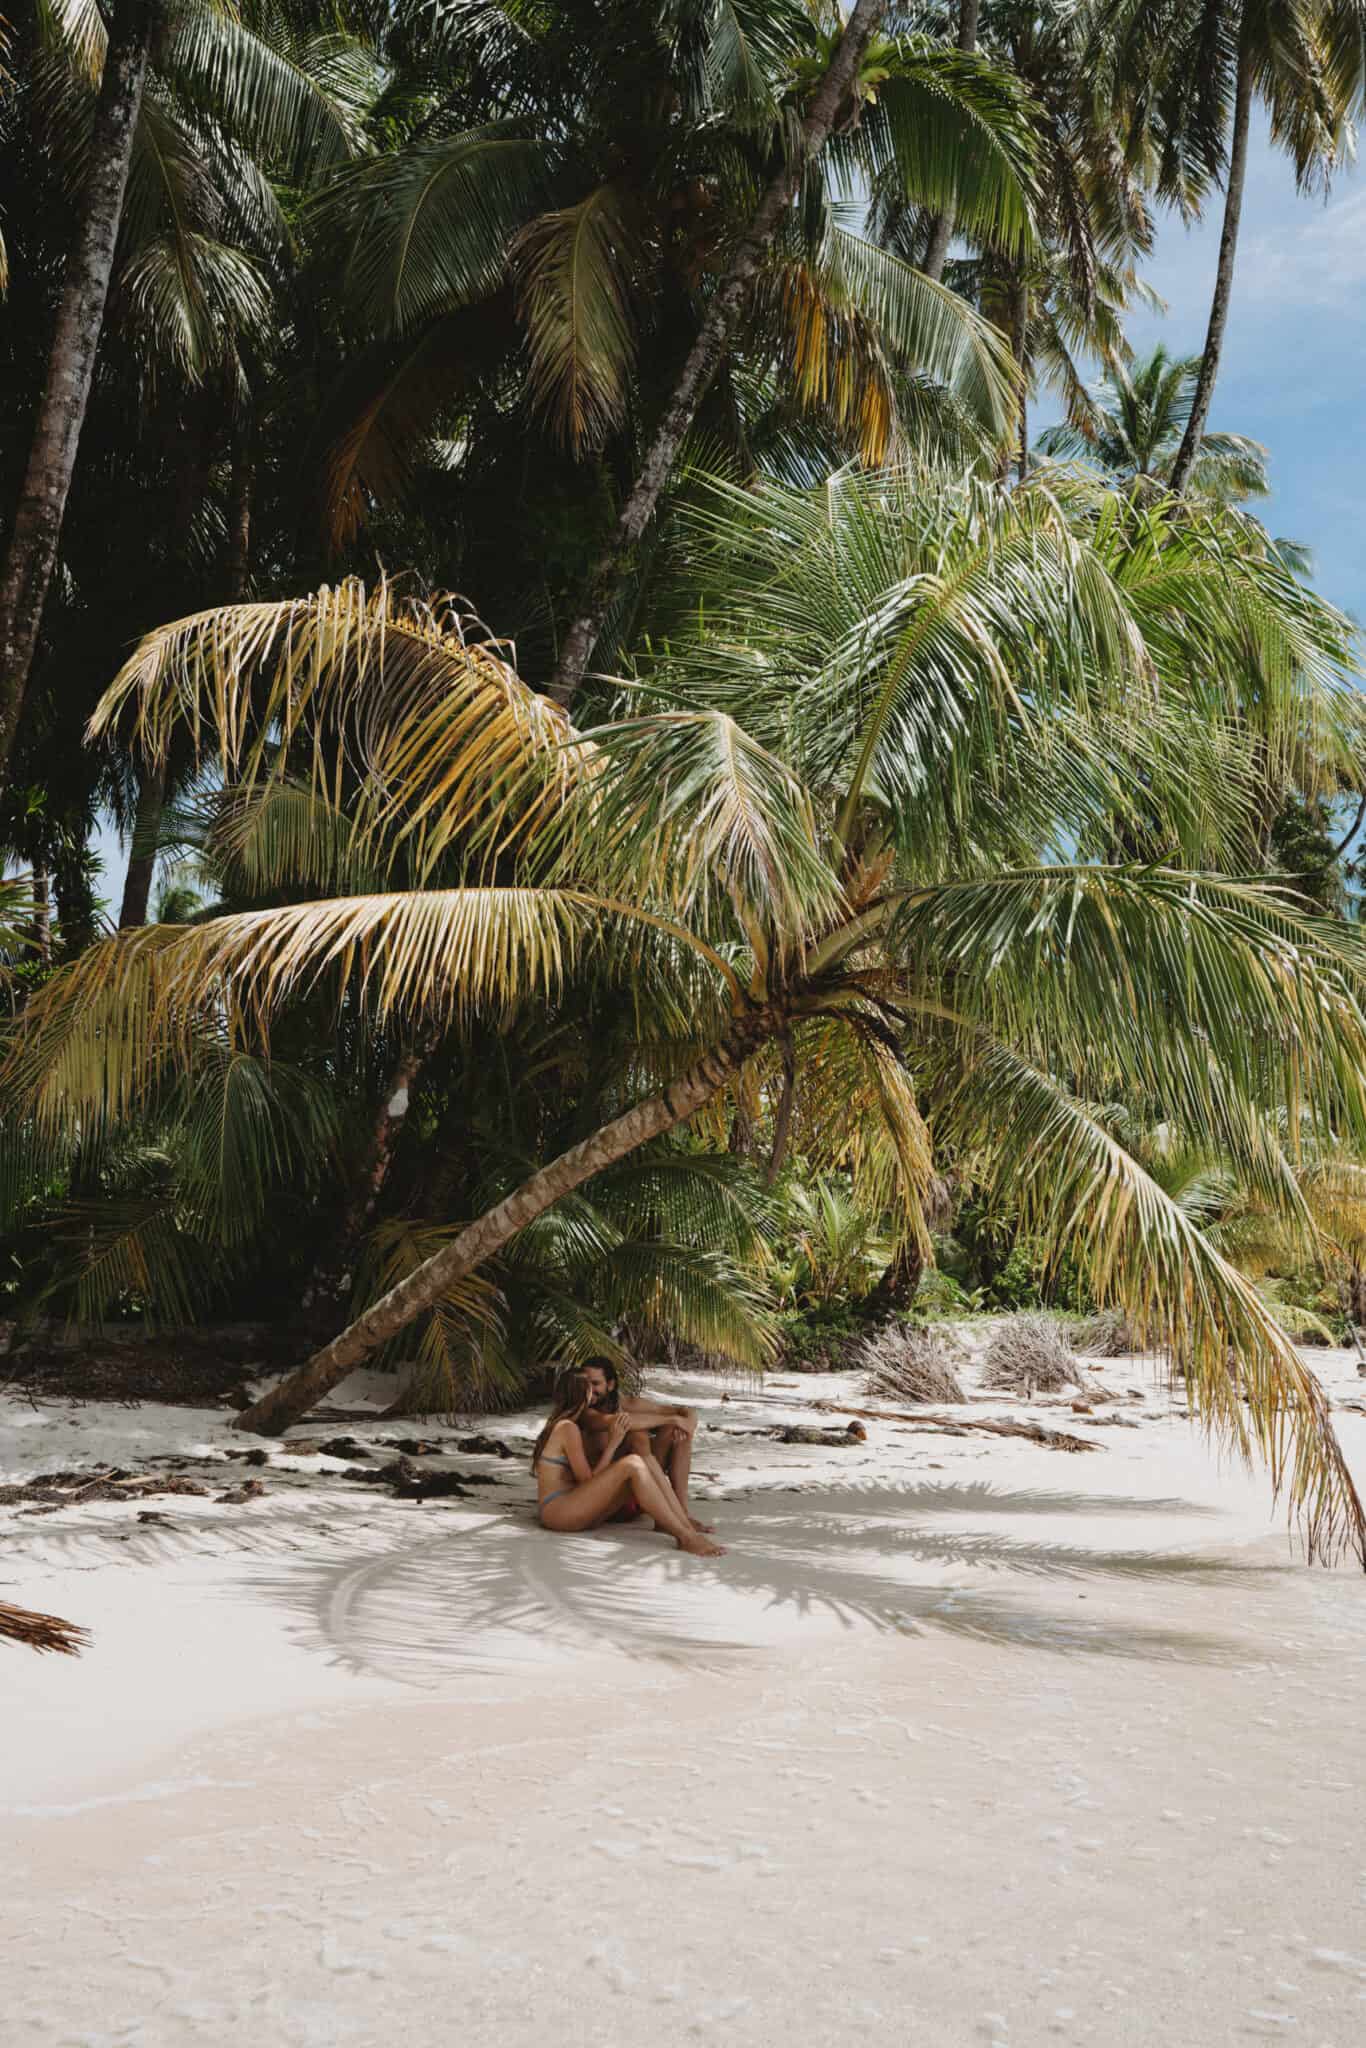 Zapatilla Island Bocas del Toro Couple Beach palm tree